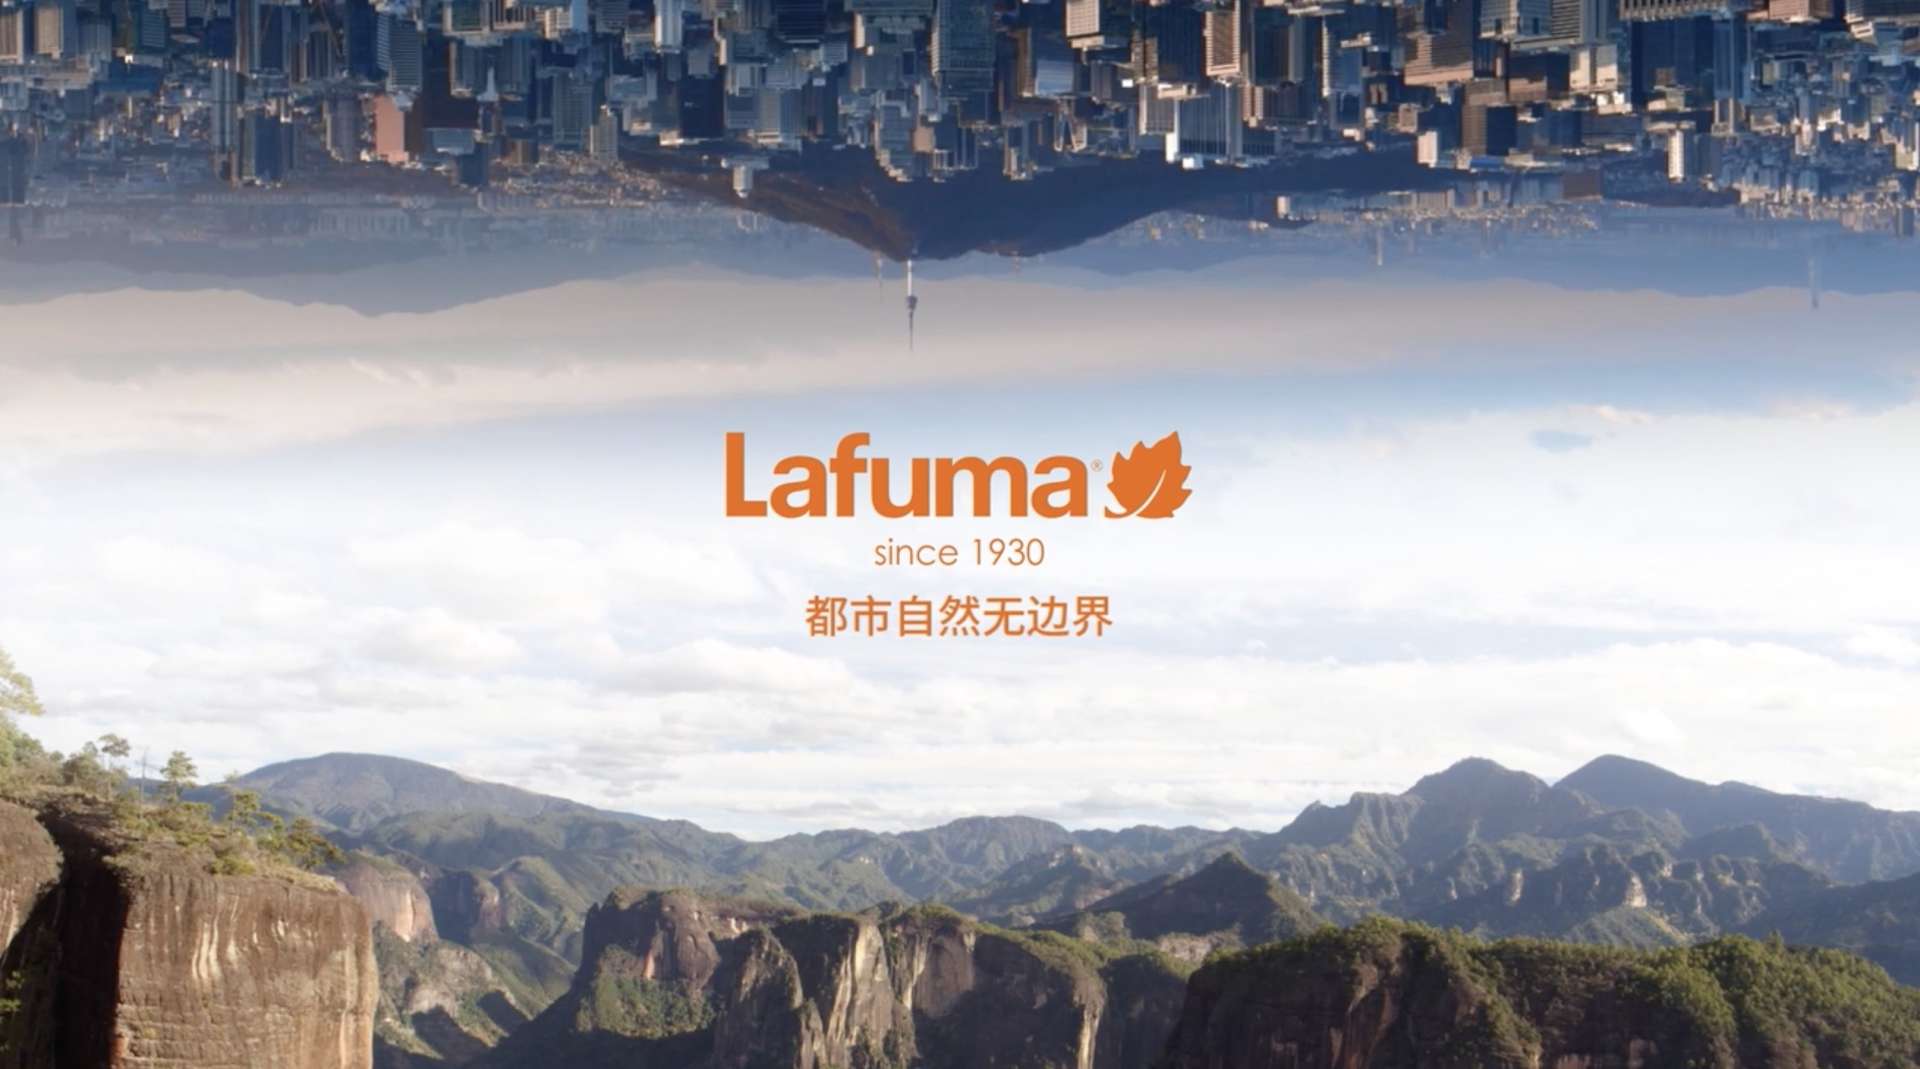 lafuma品牌广告 风格篇